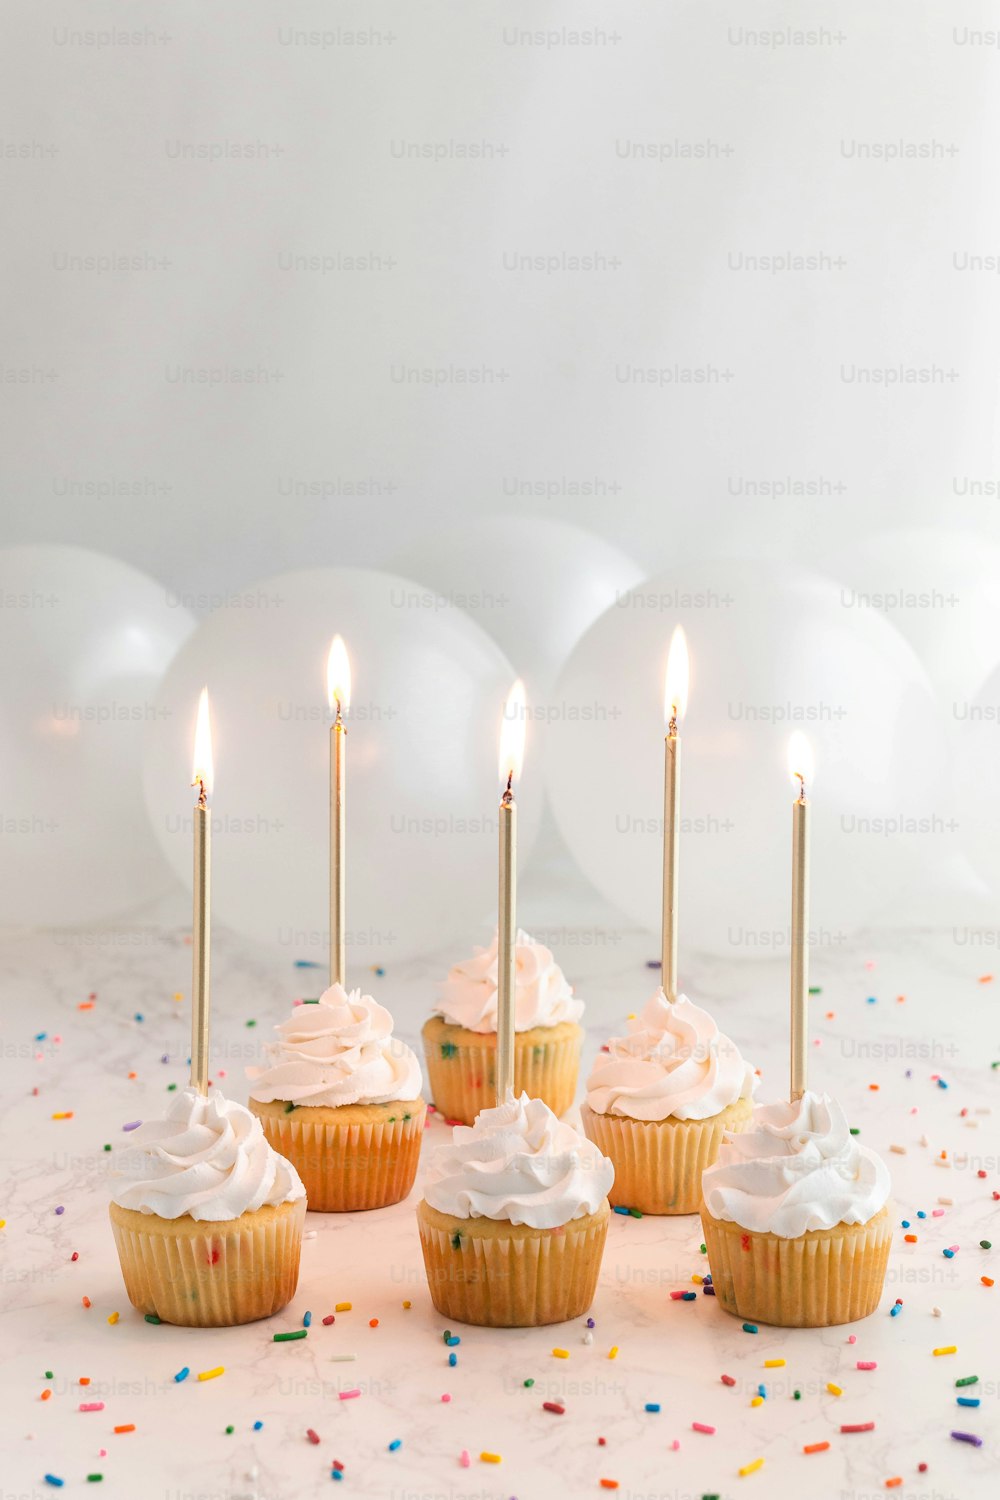 Un grupo de cupcakes con glaseado blanco y velas encendidas